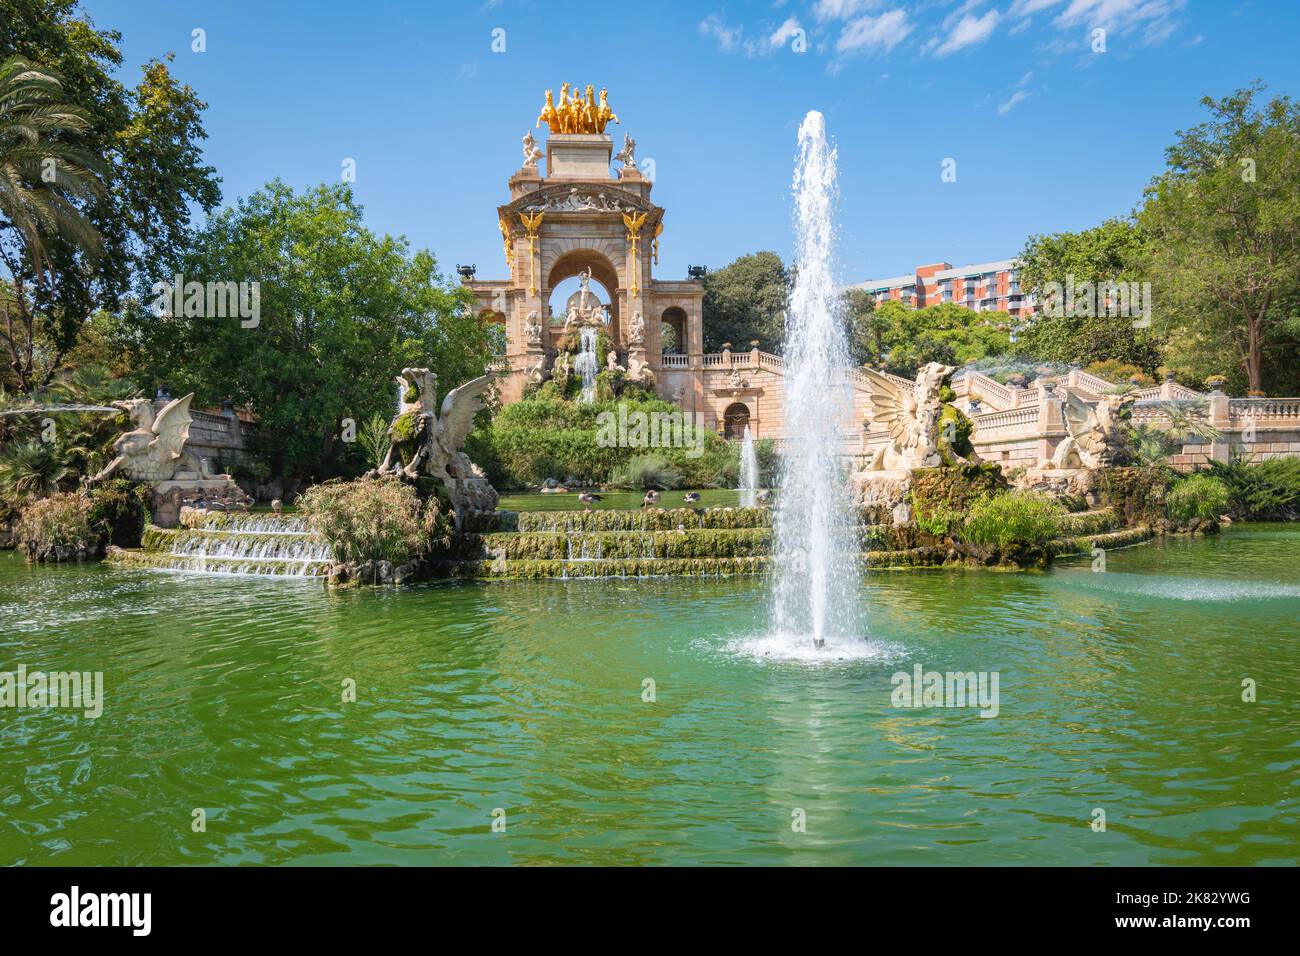 Fountain in Parc de la Ciutadella, Barcelona, Spain. Stock Photo